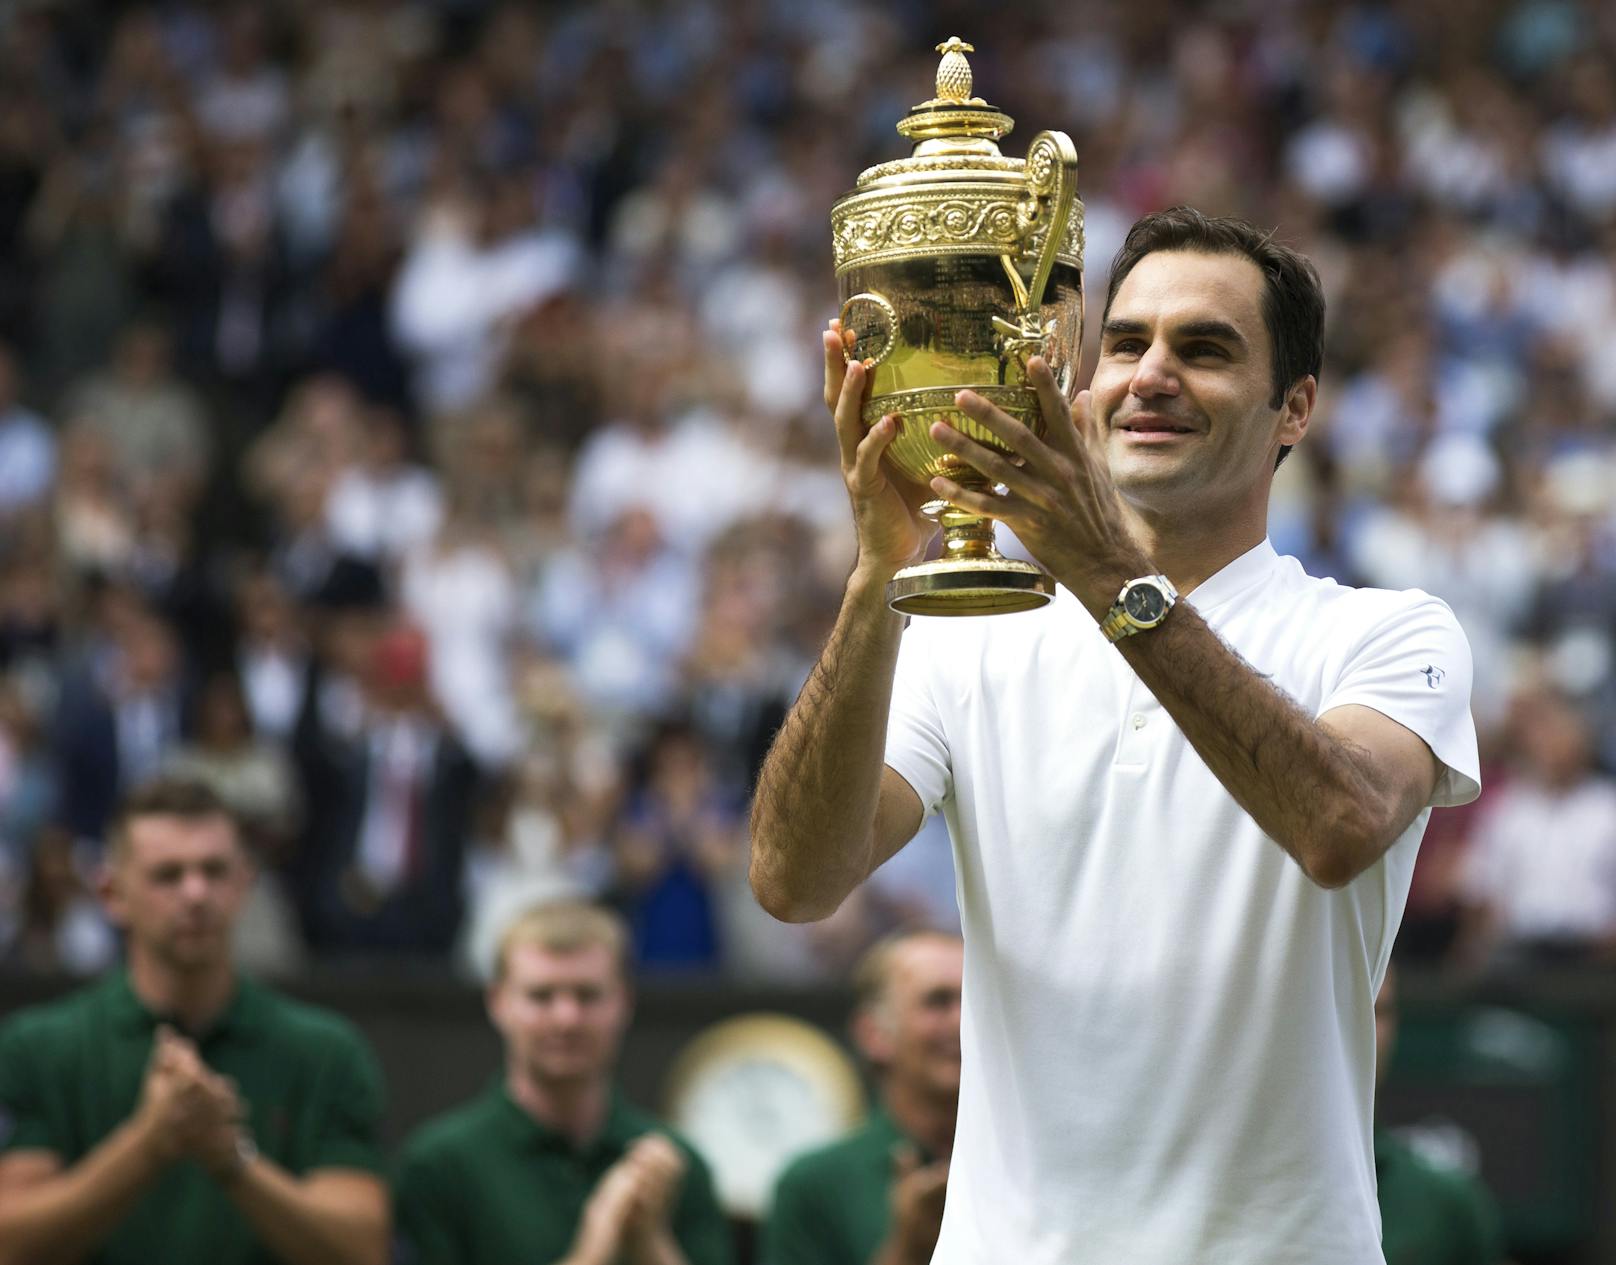 Federer feiert seinen Sieg nachdem er das Endspiel bei den Wimbledon-Meisterschaftenam 16.Juli 2017 in London, Großbritannien gewonnen hat.